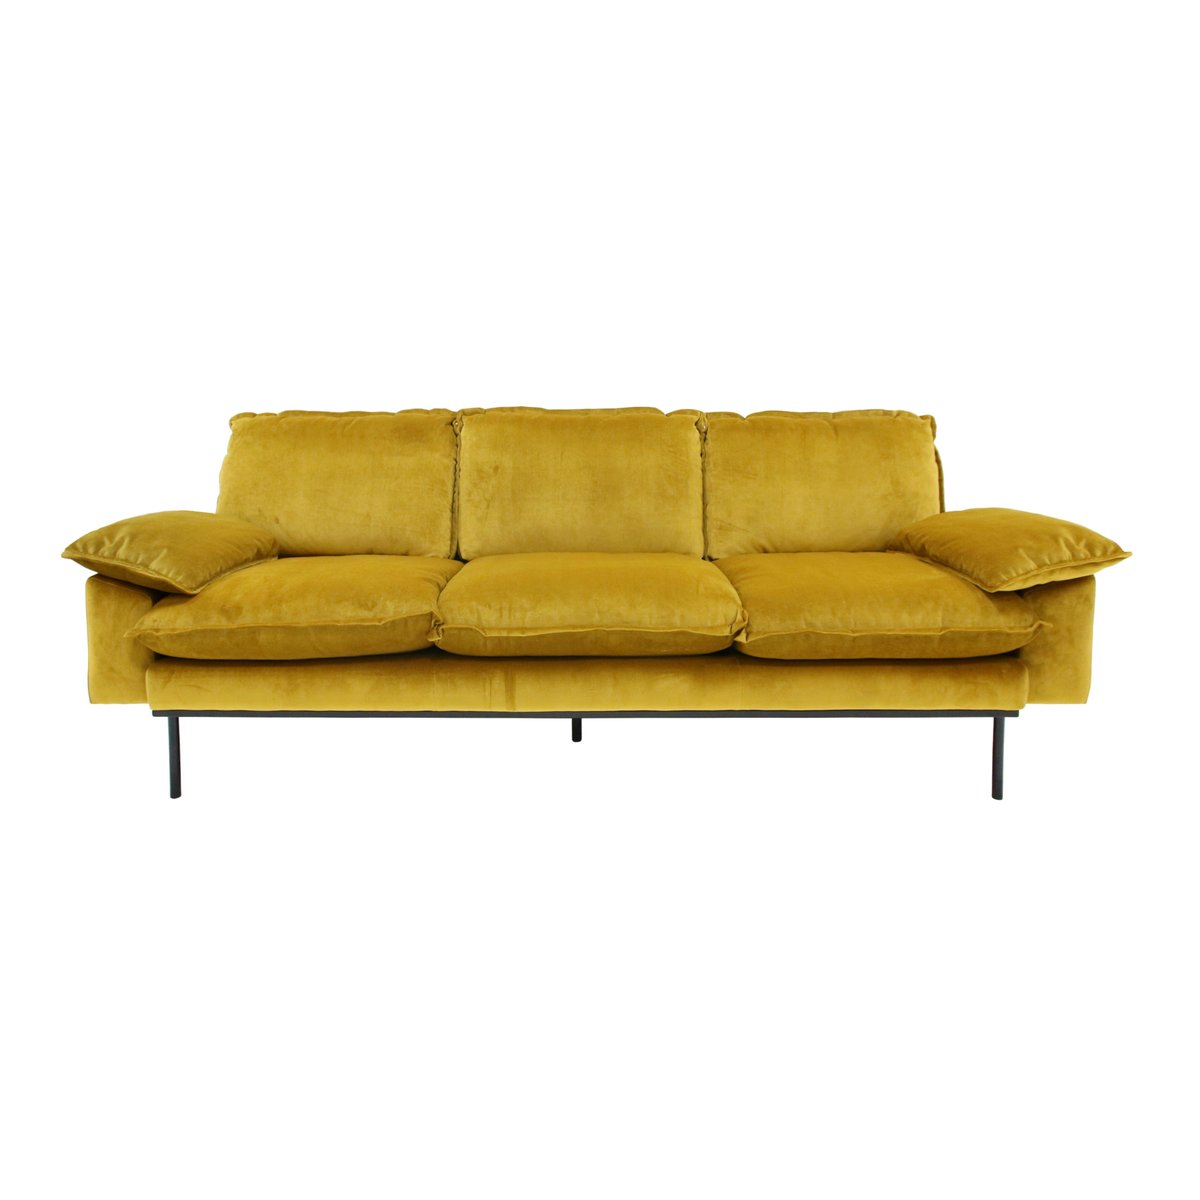 HKliving Retro 3:n istuttava sohva ochra (keltainen)